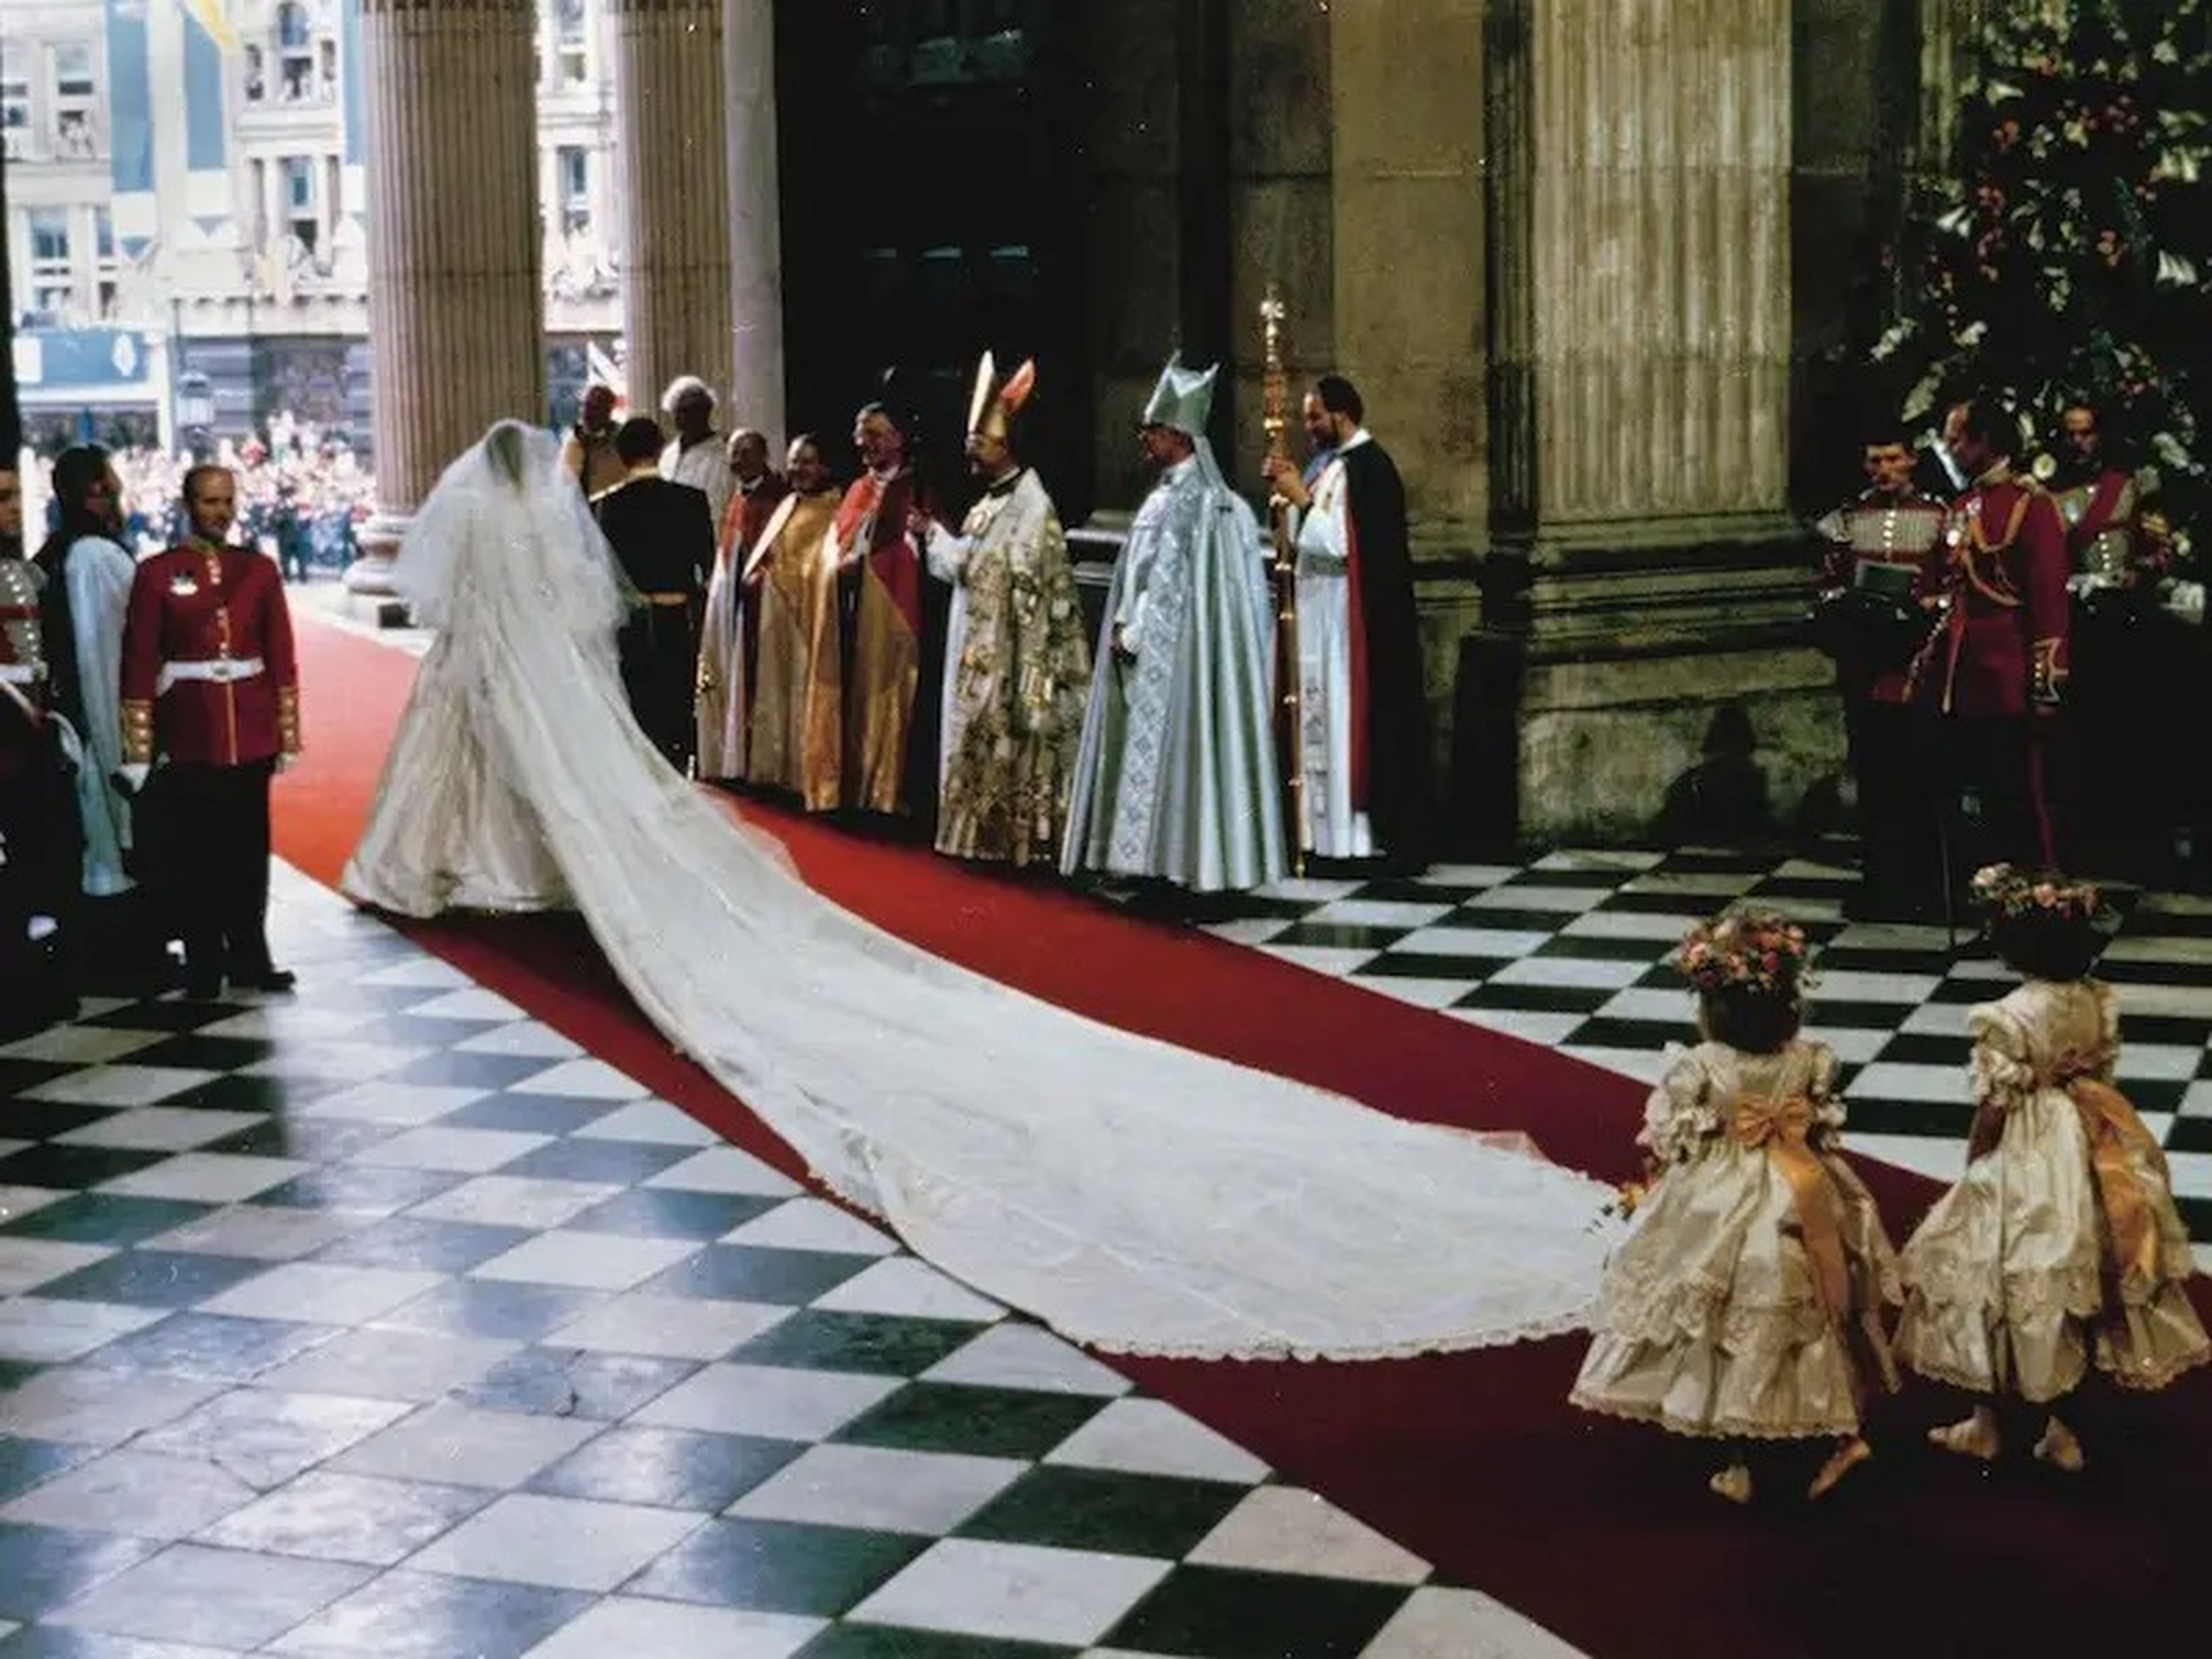 La princesa Diana en su boda. / AP Photo